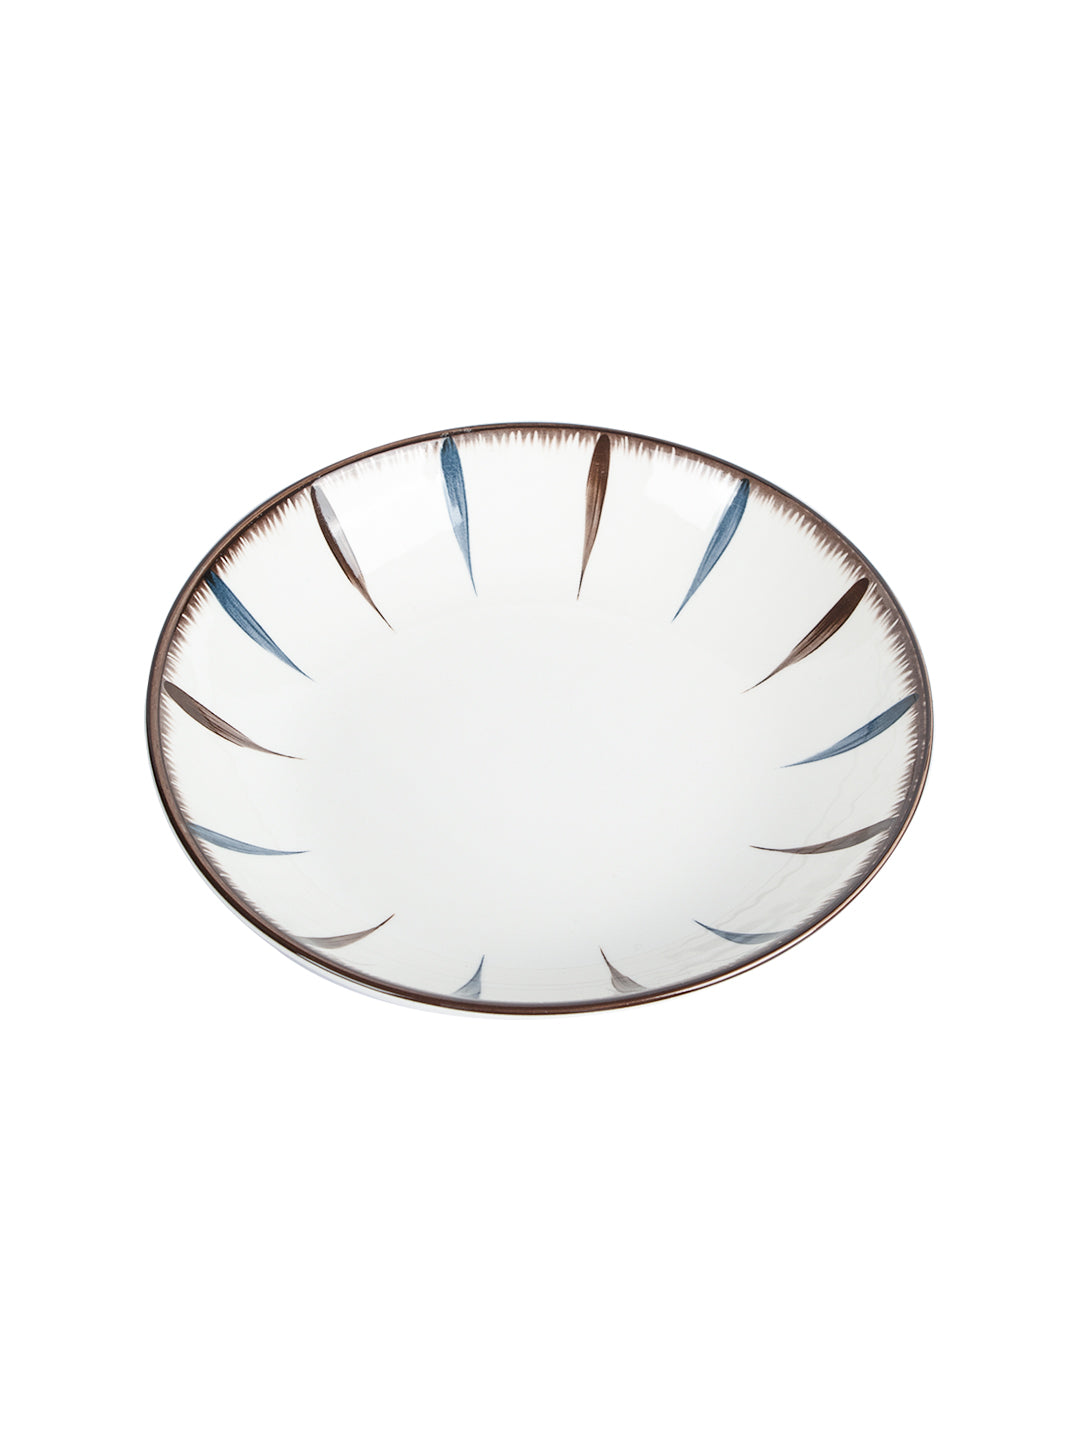 VON CASA Round Ceramic Serving Bowl - Off White